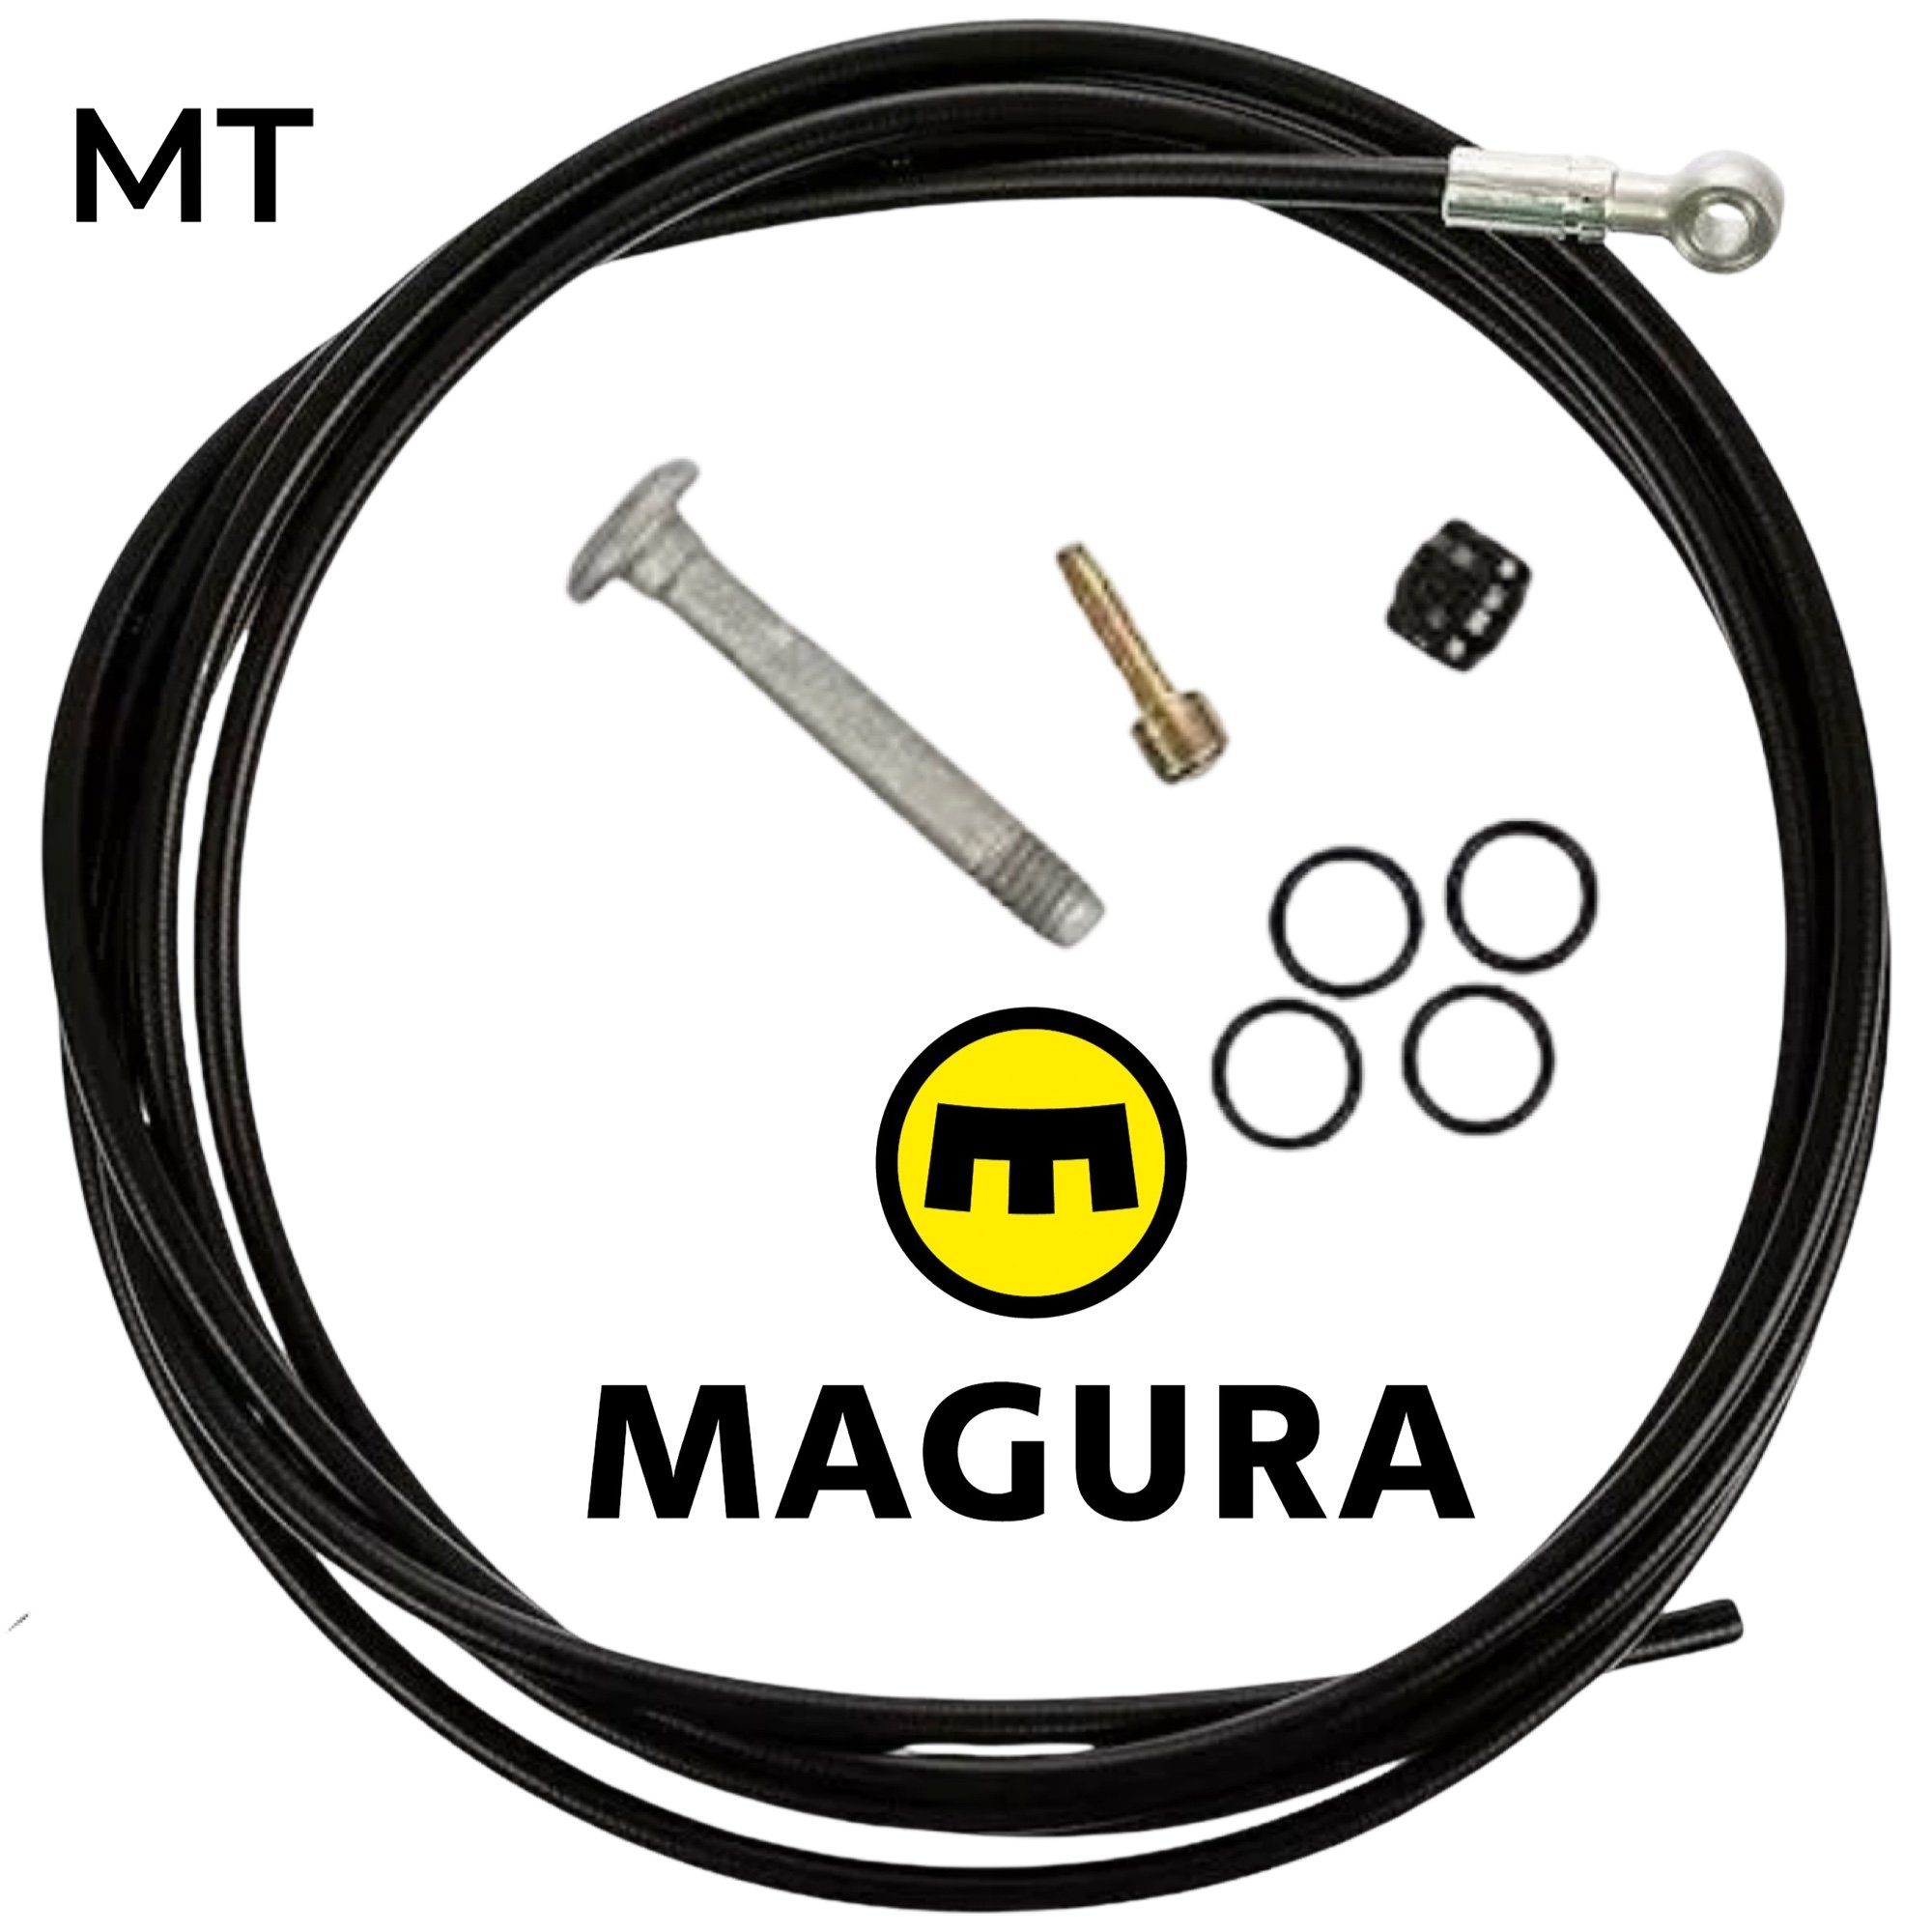 Magura Scheibenbremse Magura MT8 MT6 MT4 Hochdruck Bremsleitung Disc Tube 2.2 90 Grad